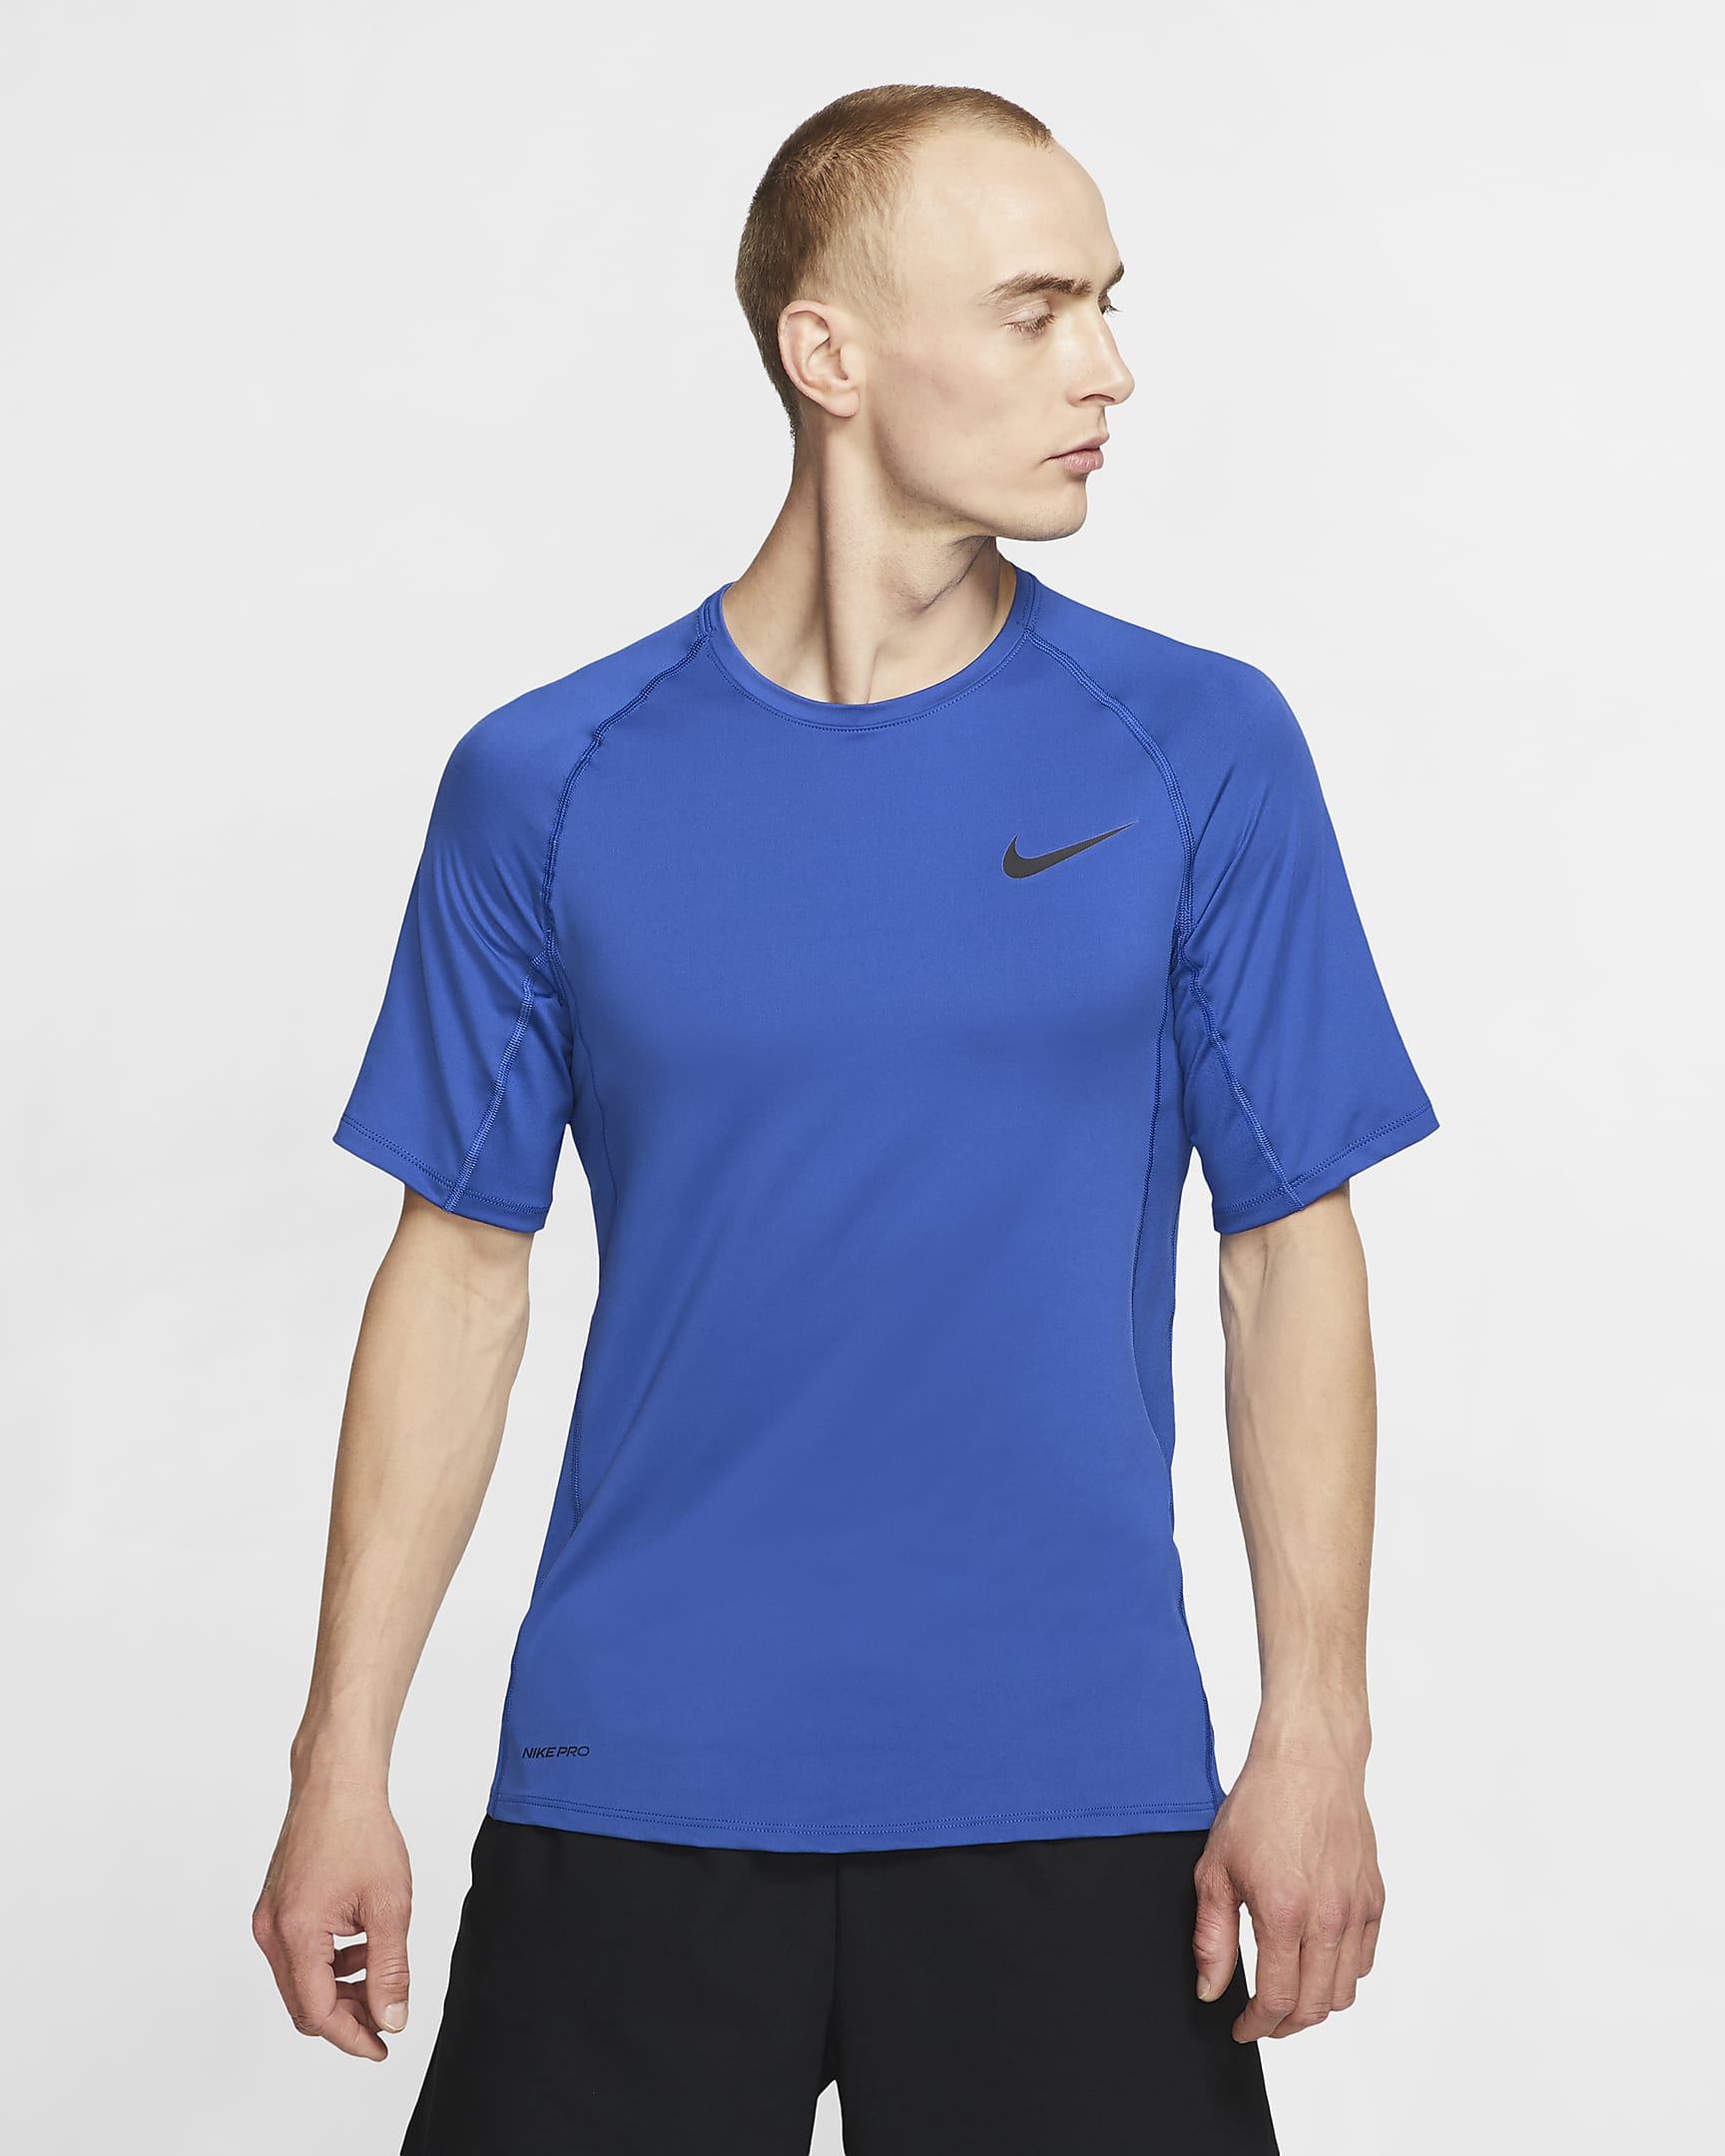 Nike Pro Men's Short-Sleeve Top. Nike.com